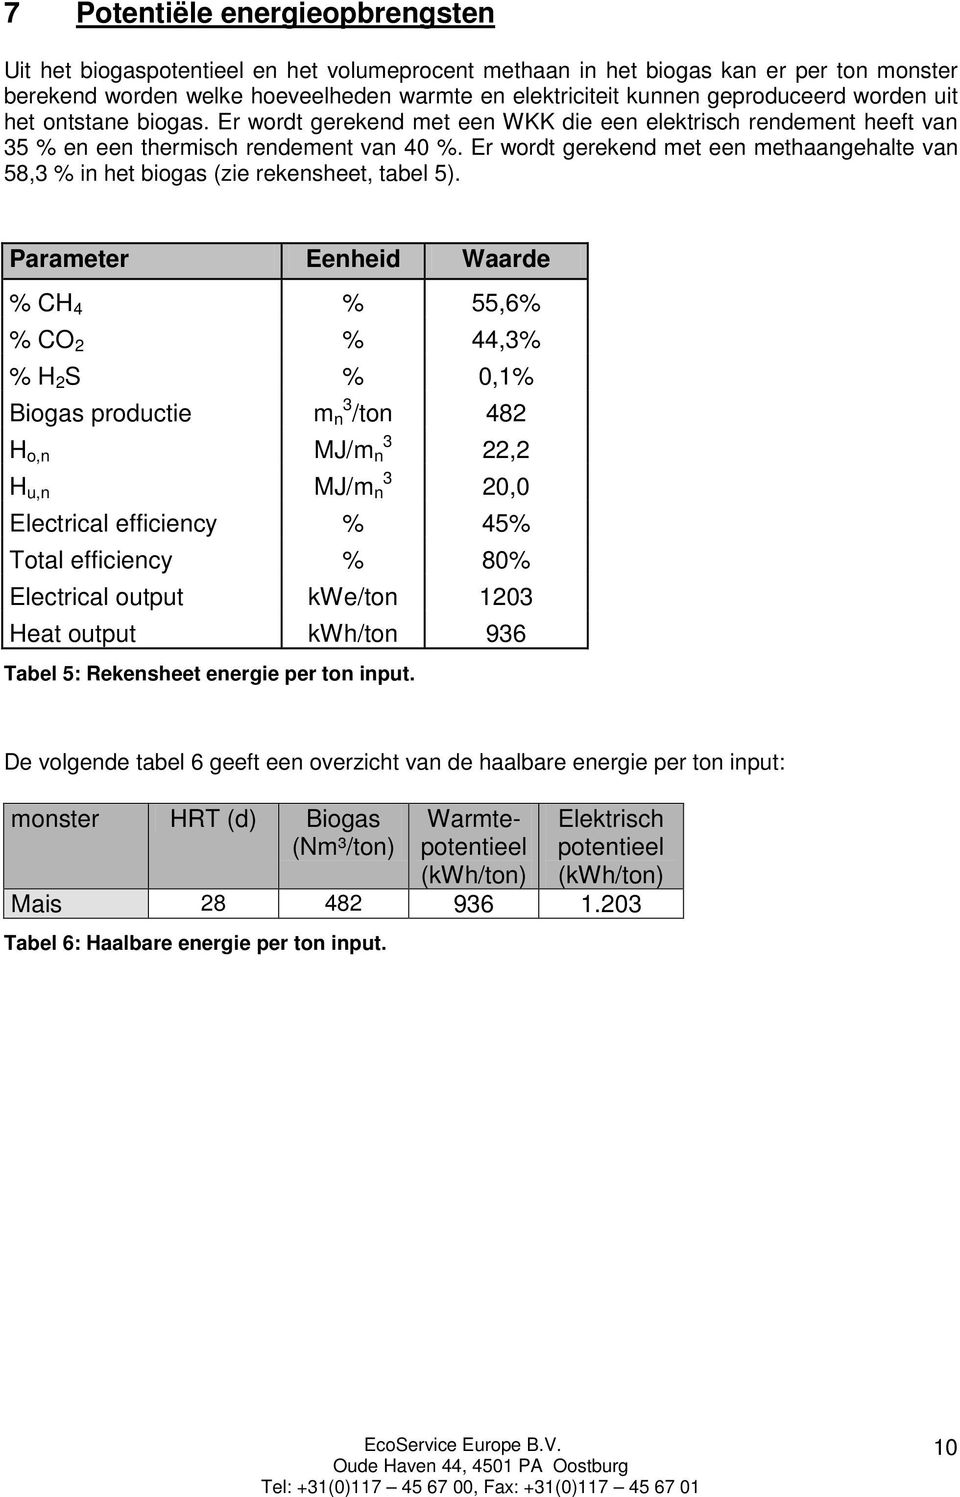 Er wordt gerekend met een methaangehalte van 58,3 % in het biogas (zie rekensheet, tabel 5).